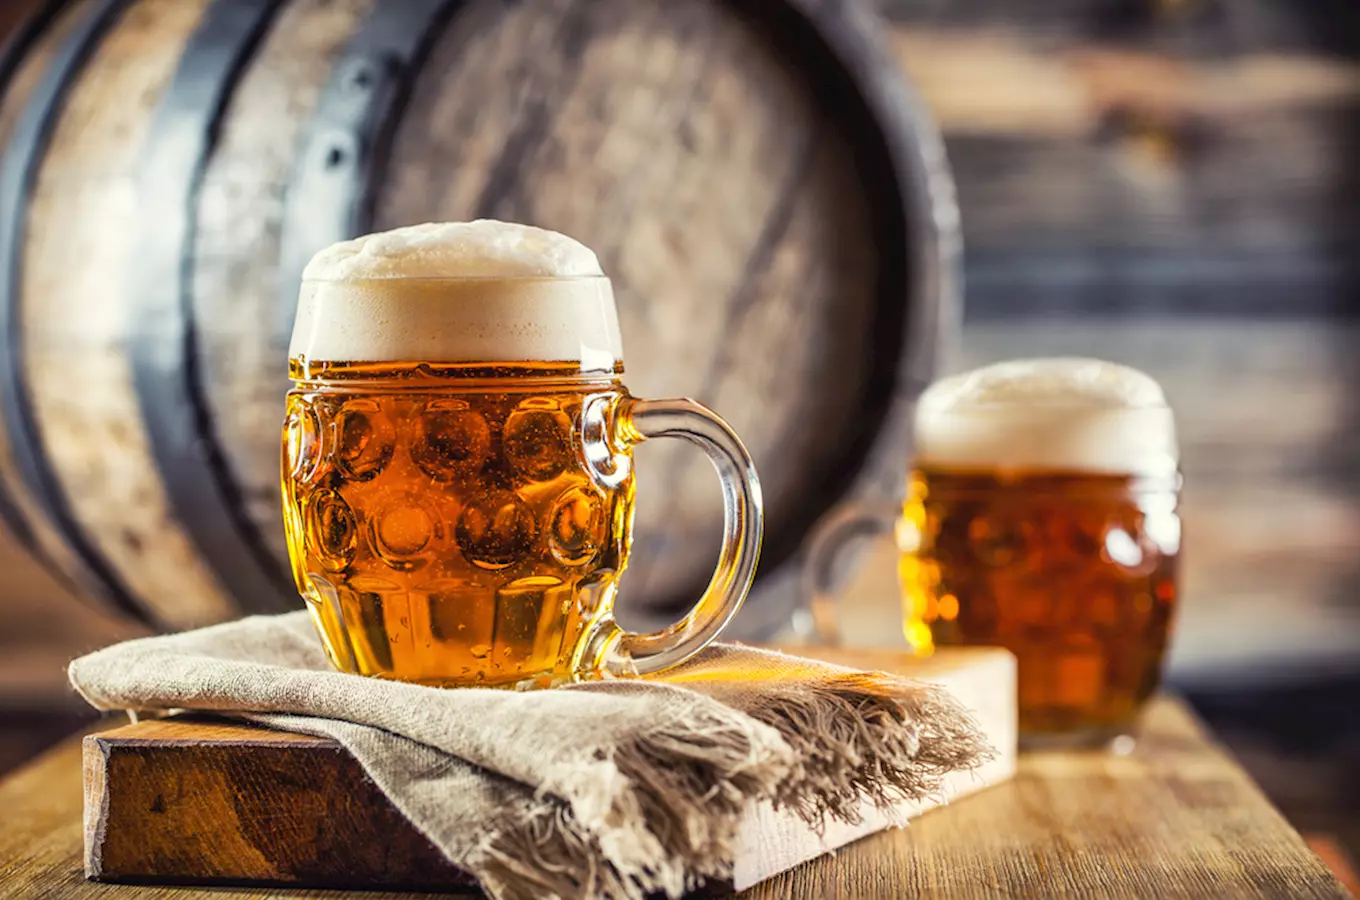 Tipy na pivní zážitky, které byste si v Plzni neměli nechat ujít